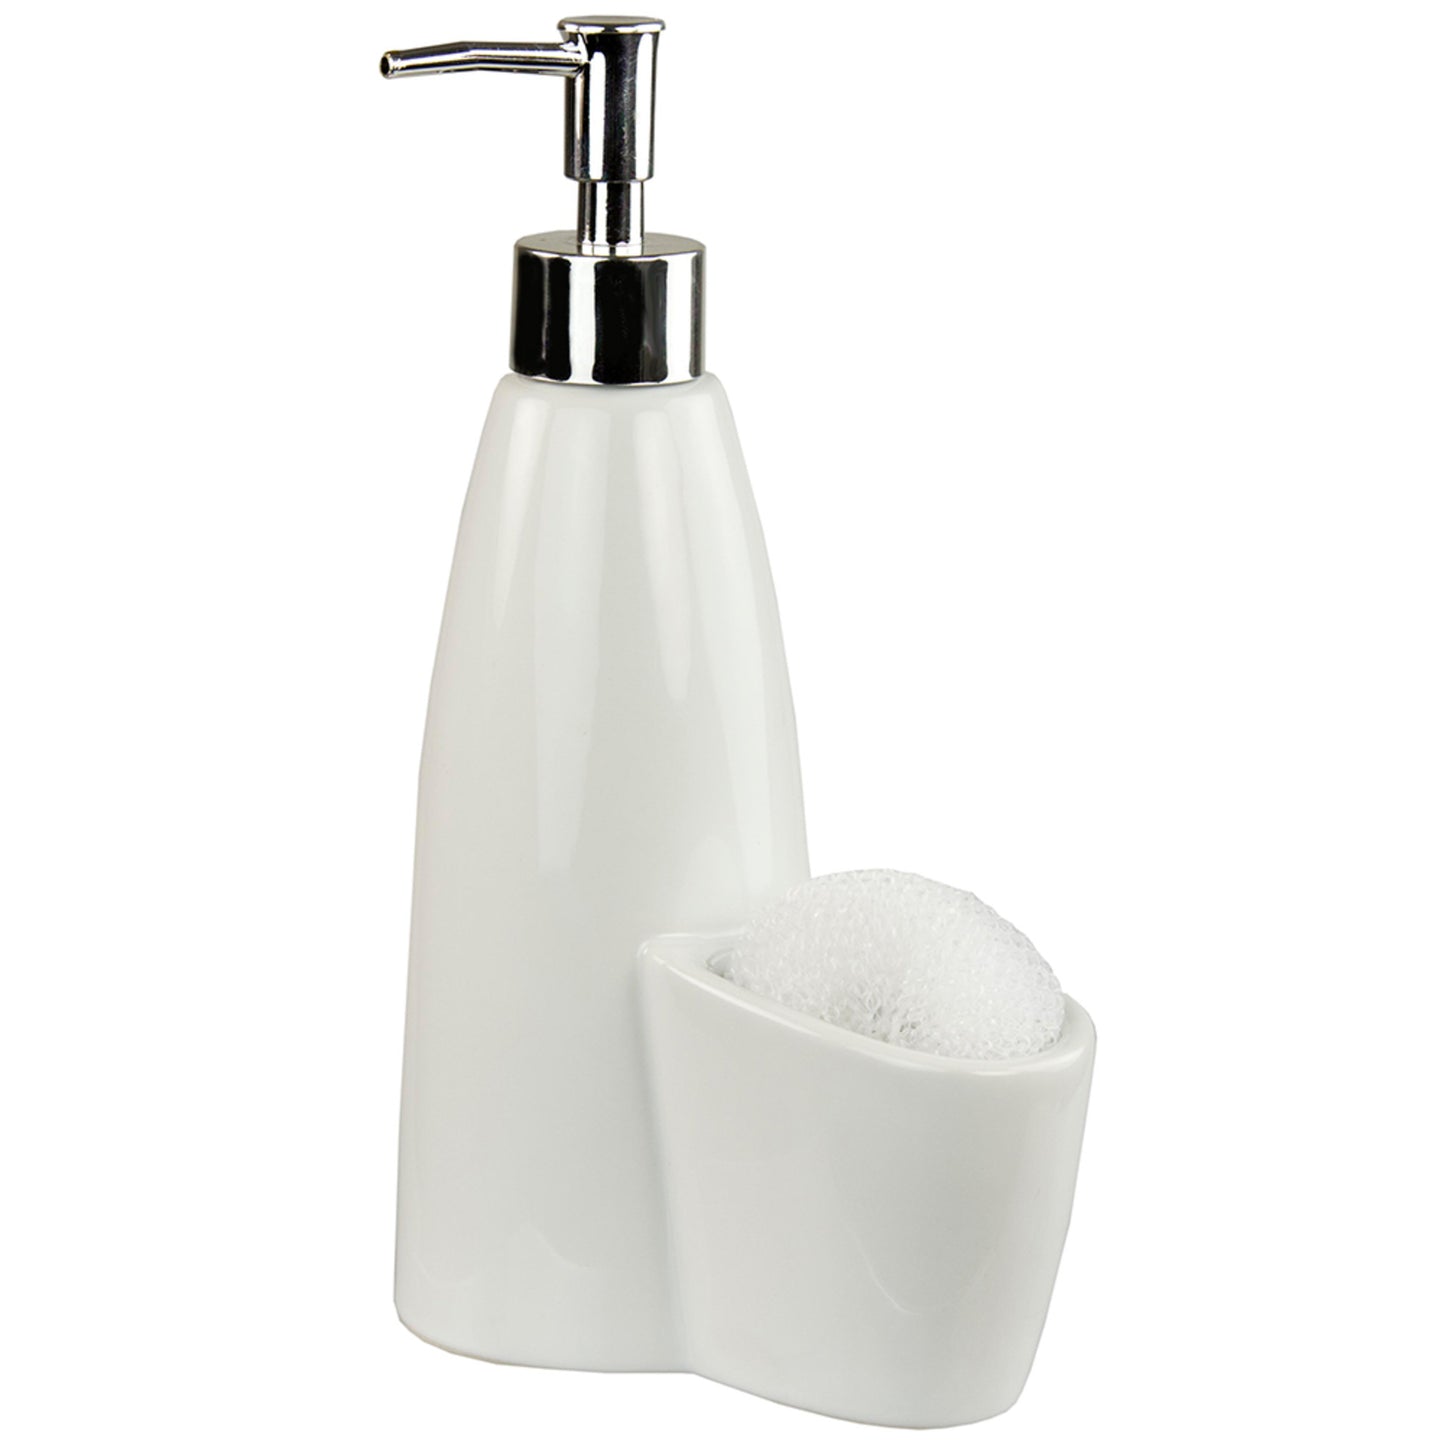 Home Basics Tall Ceramic Soap Dispenser with Sponge - White